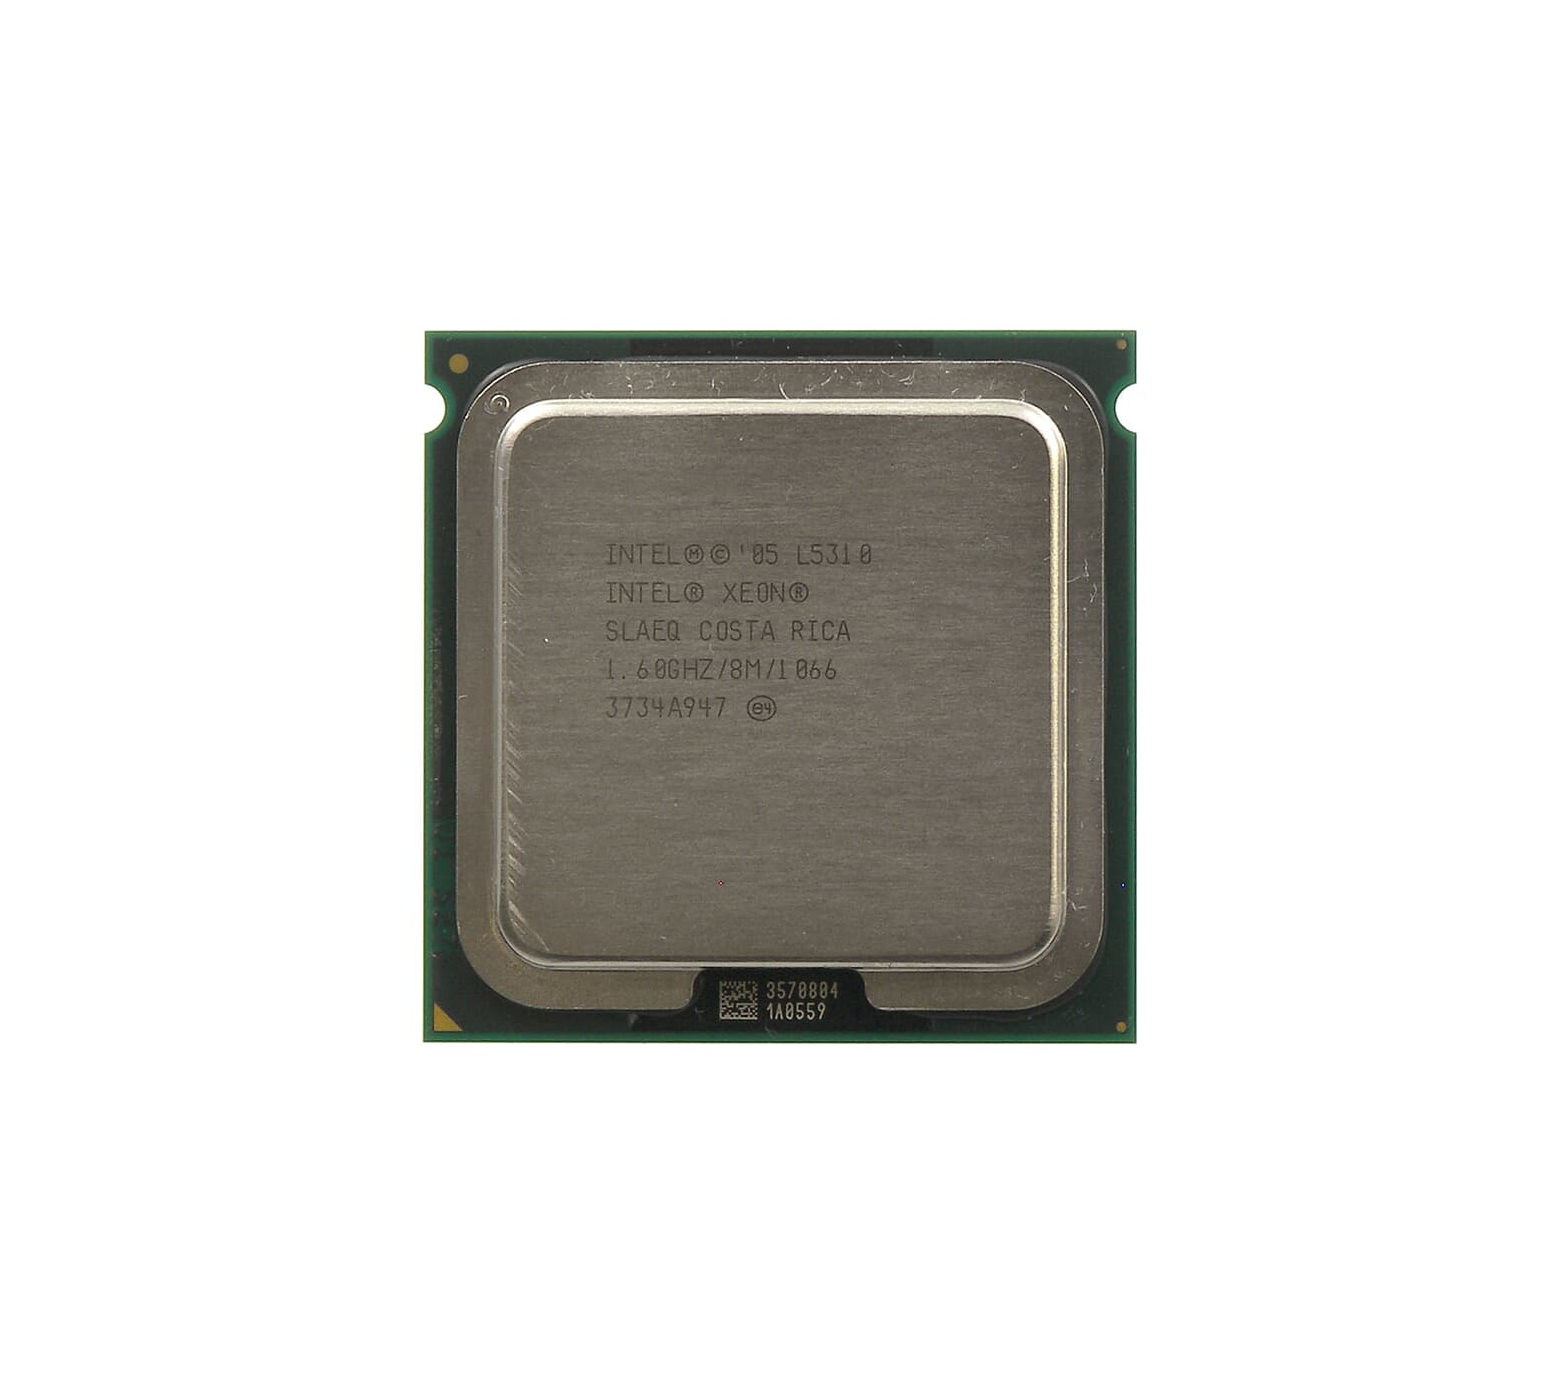 Fujitsu S26361-F3249-E460 1.6GHz 1066MHz FSB 8MB L2 Cache Socket PLGA771 Intel Xeon L5310 4-Core Processor